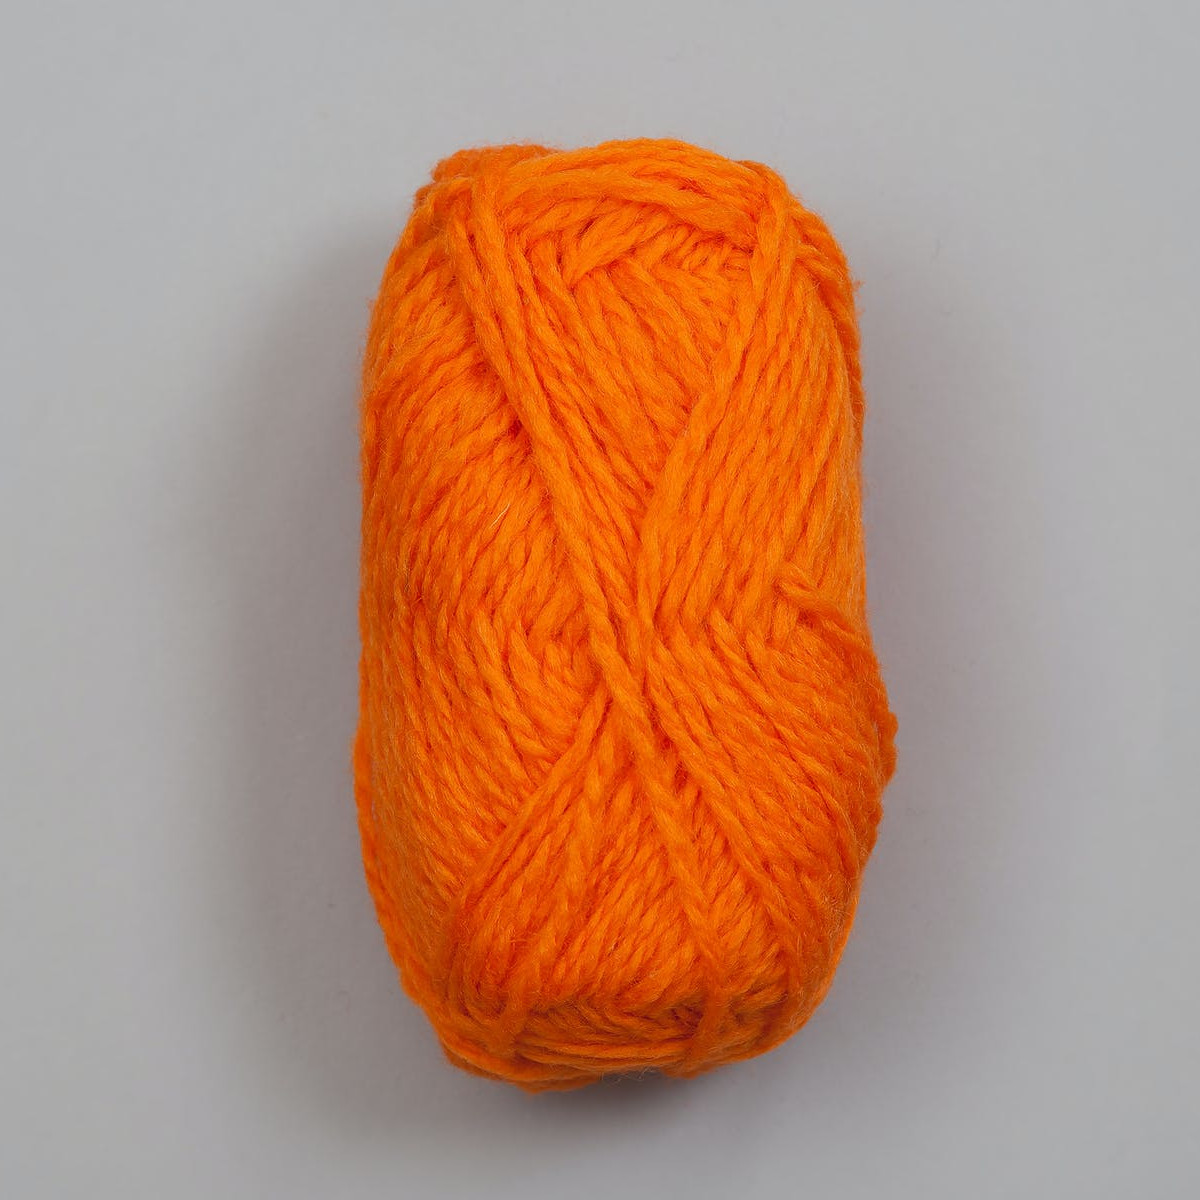 Vams - Oransje / Orange (43)